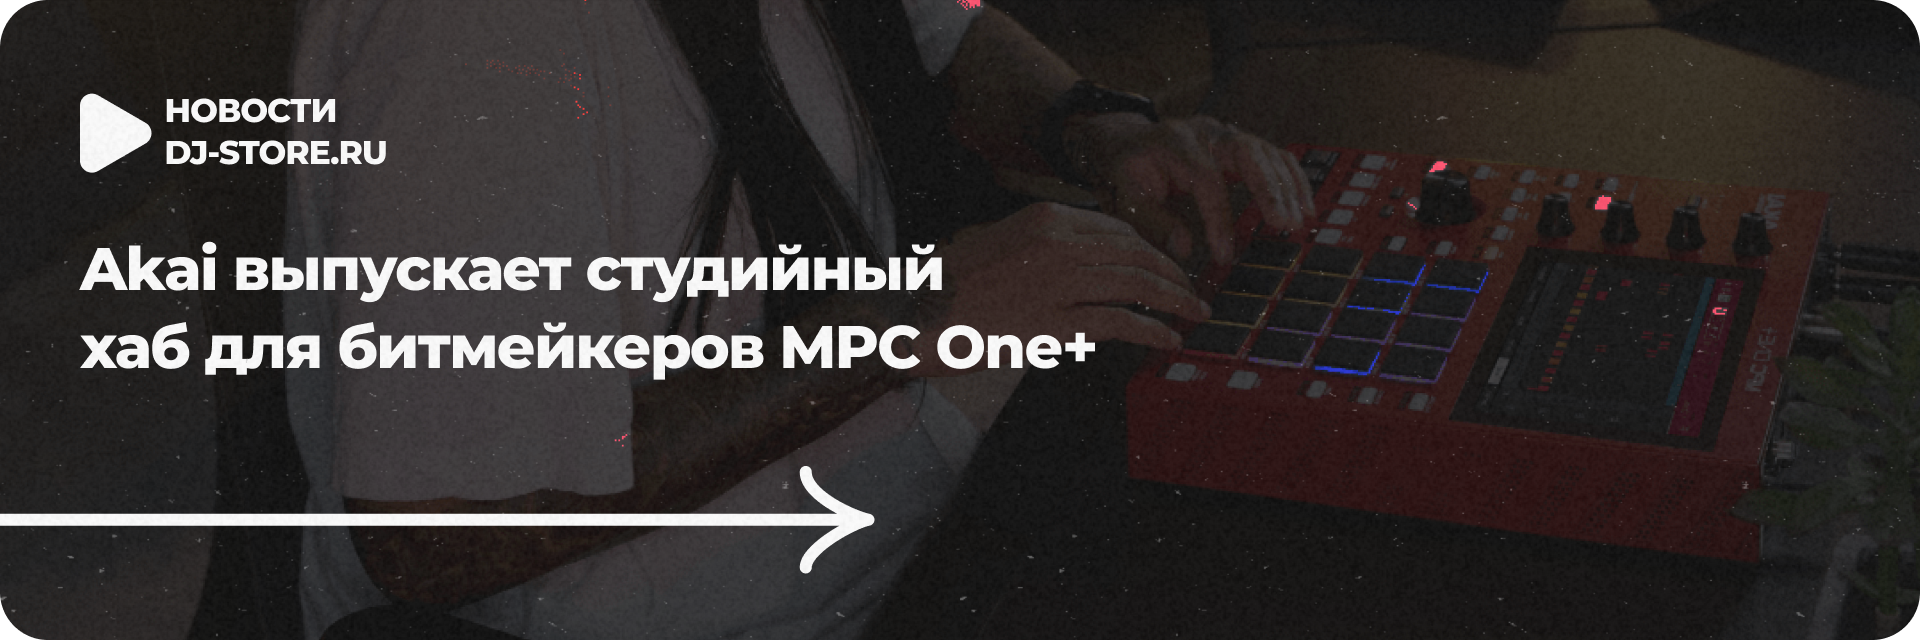 Студийный хаб для битмейкеров MPC One+